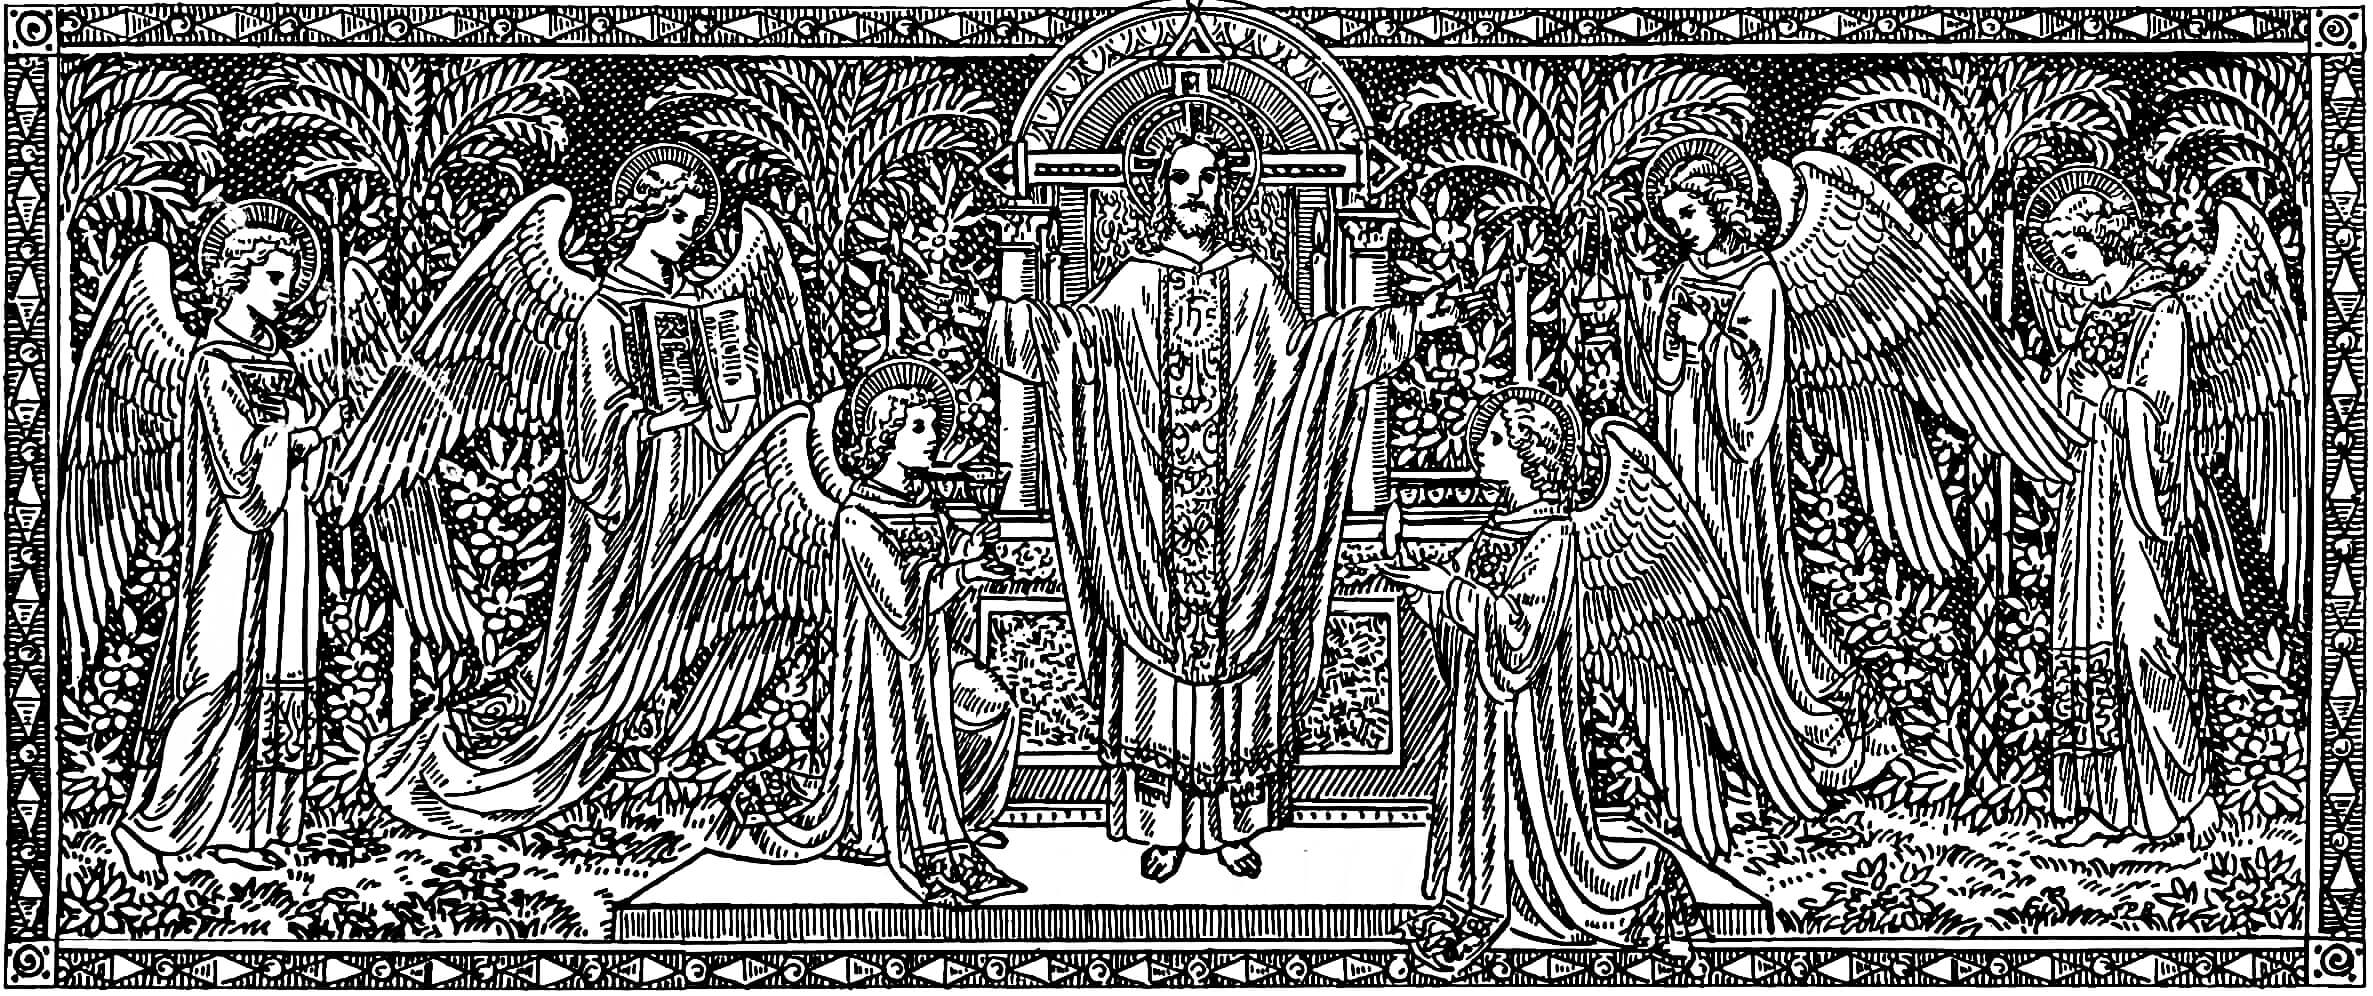 Jesucristo Sumo y Eterno Sacerdote rodeado de ángeles